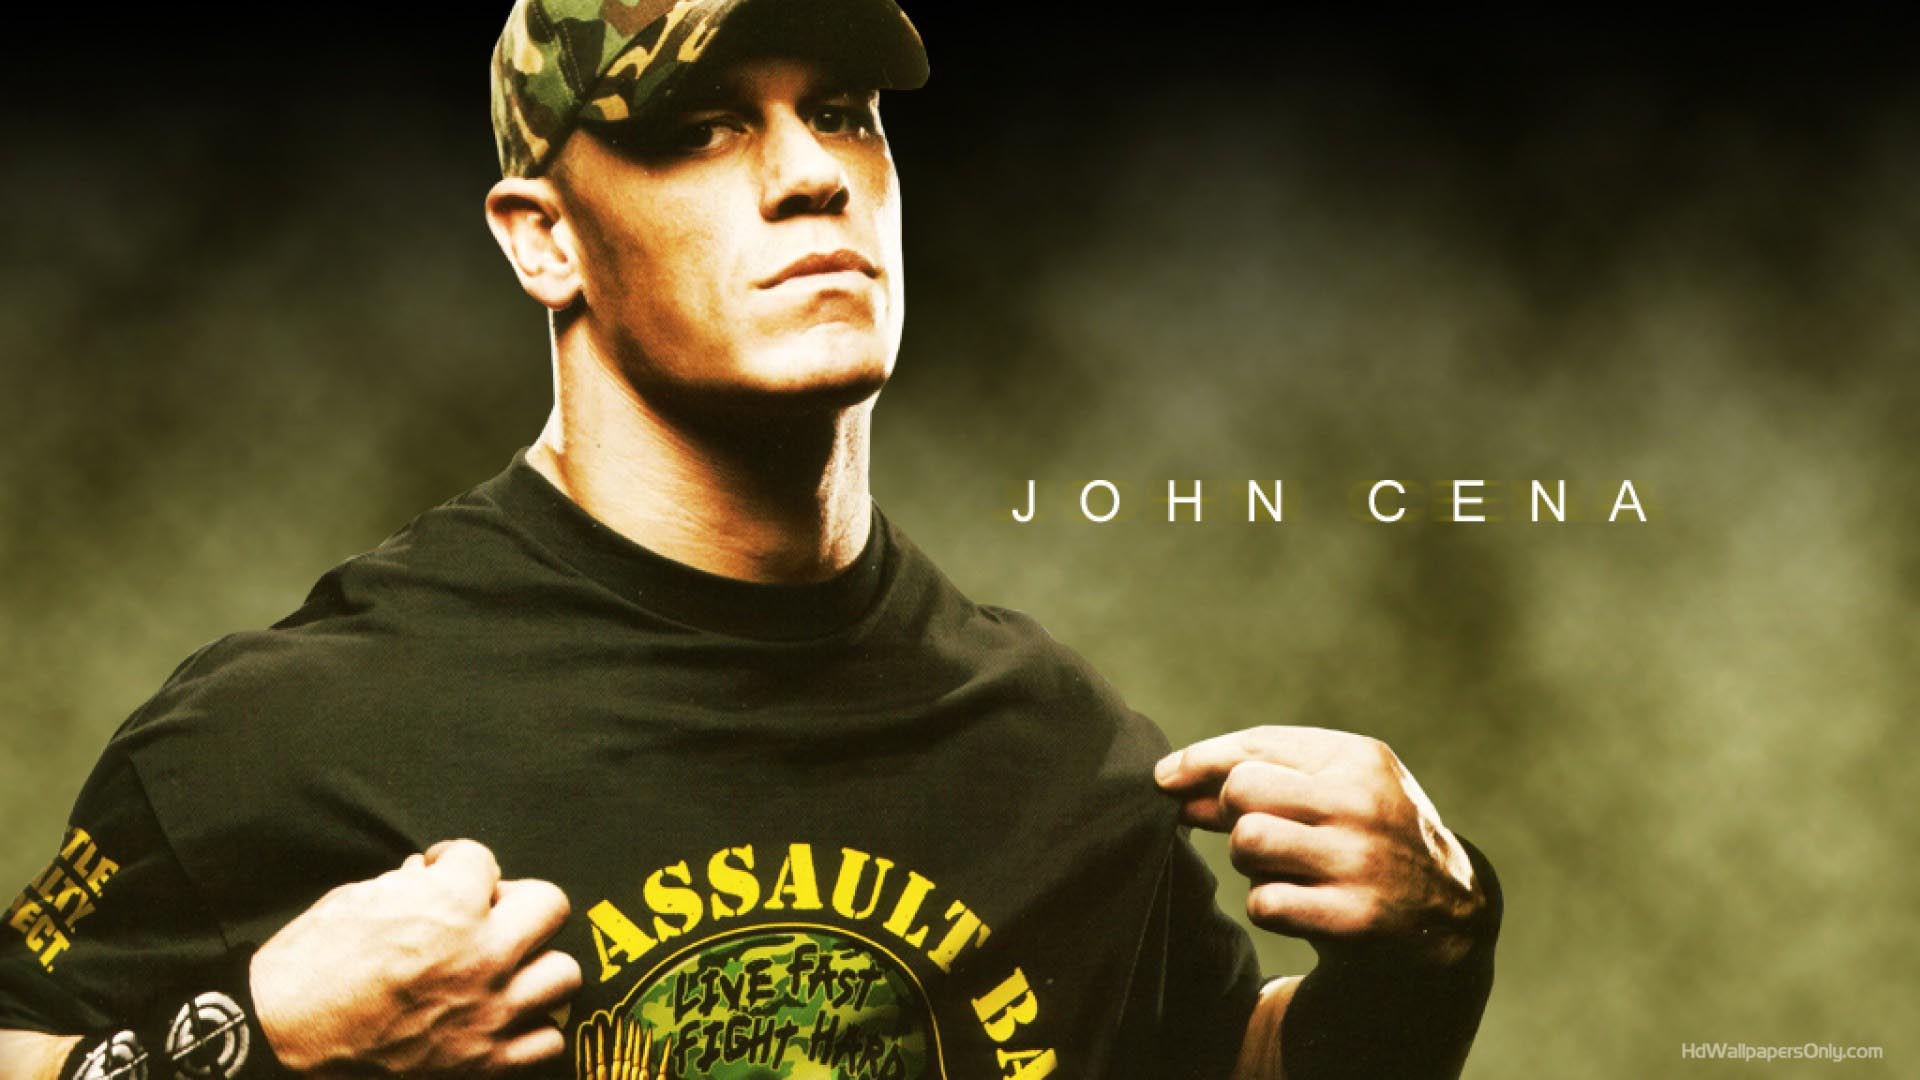 50+] Download John Cena Wallpaper - WallpaperSafari